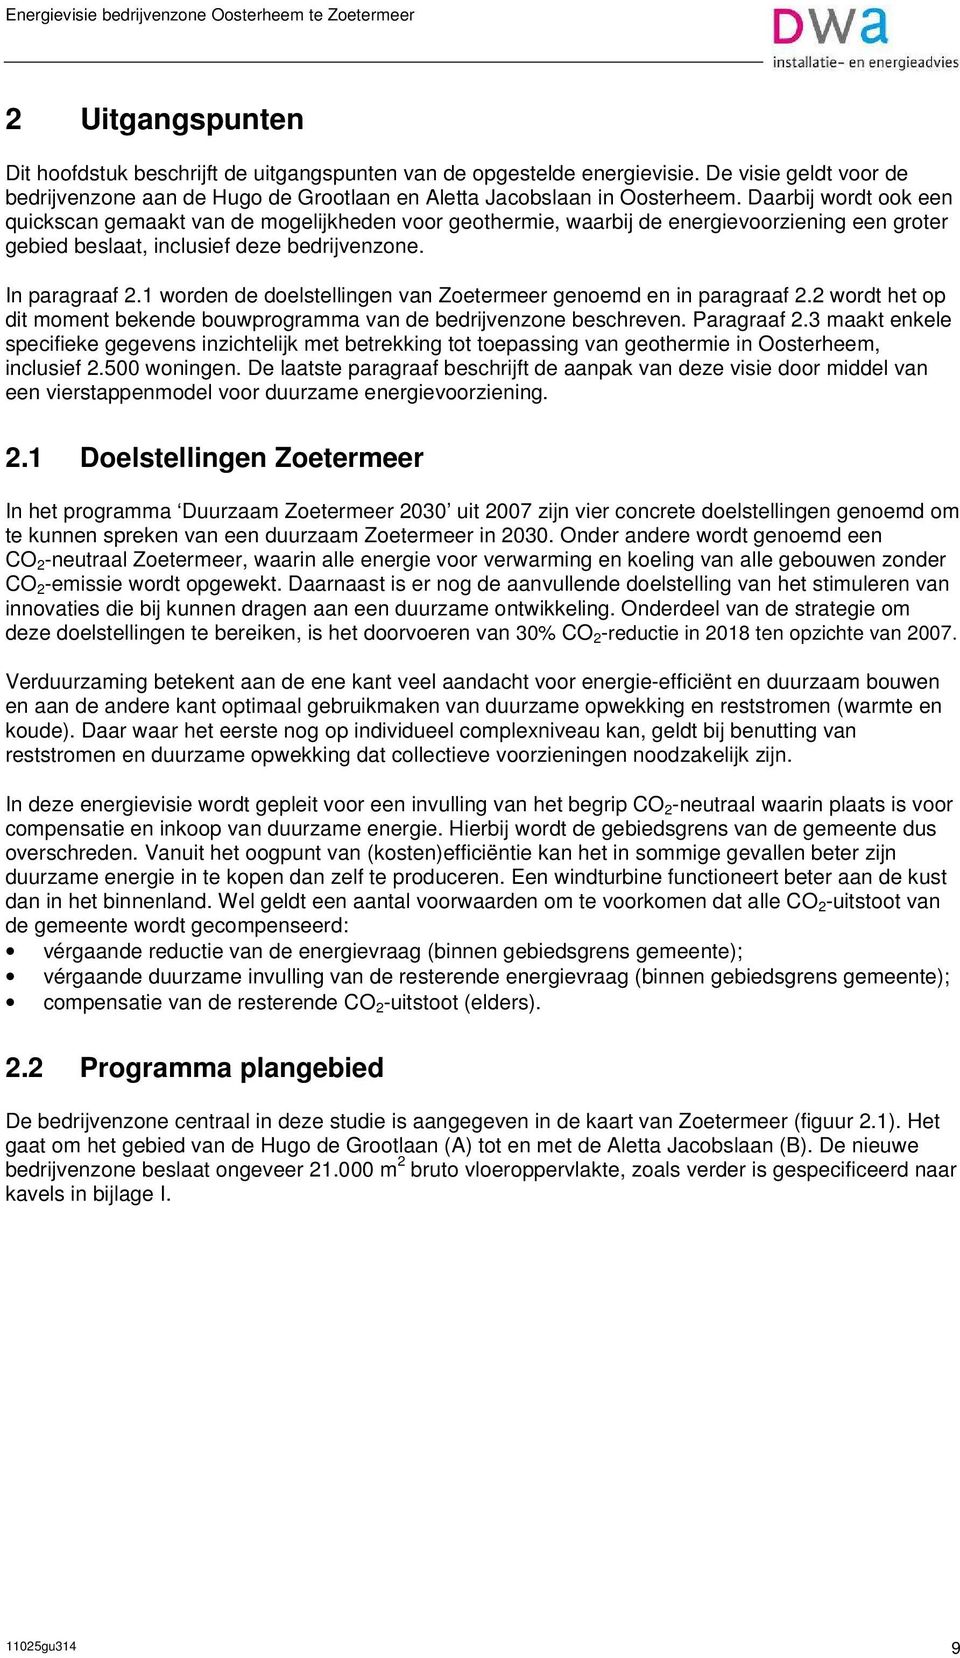 1 worden de doelstellingen van Zoetermeer genoemd en in paragraaf 2.2 wordt het op dit moment bekende bouwprogramma van de bedrijvenzone beschreven. Paragraaf 2.